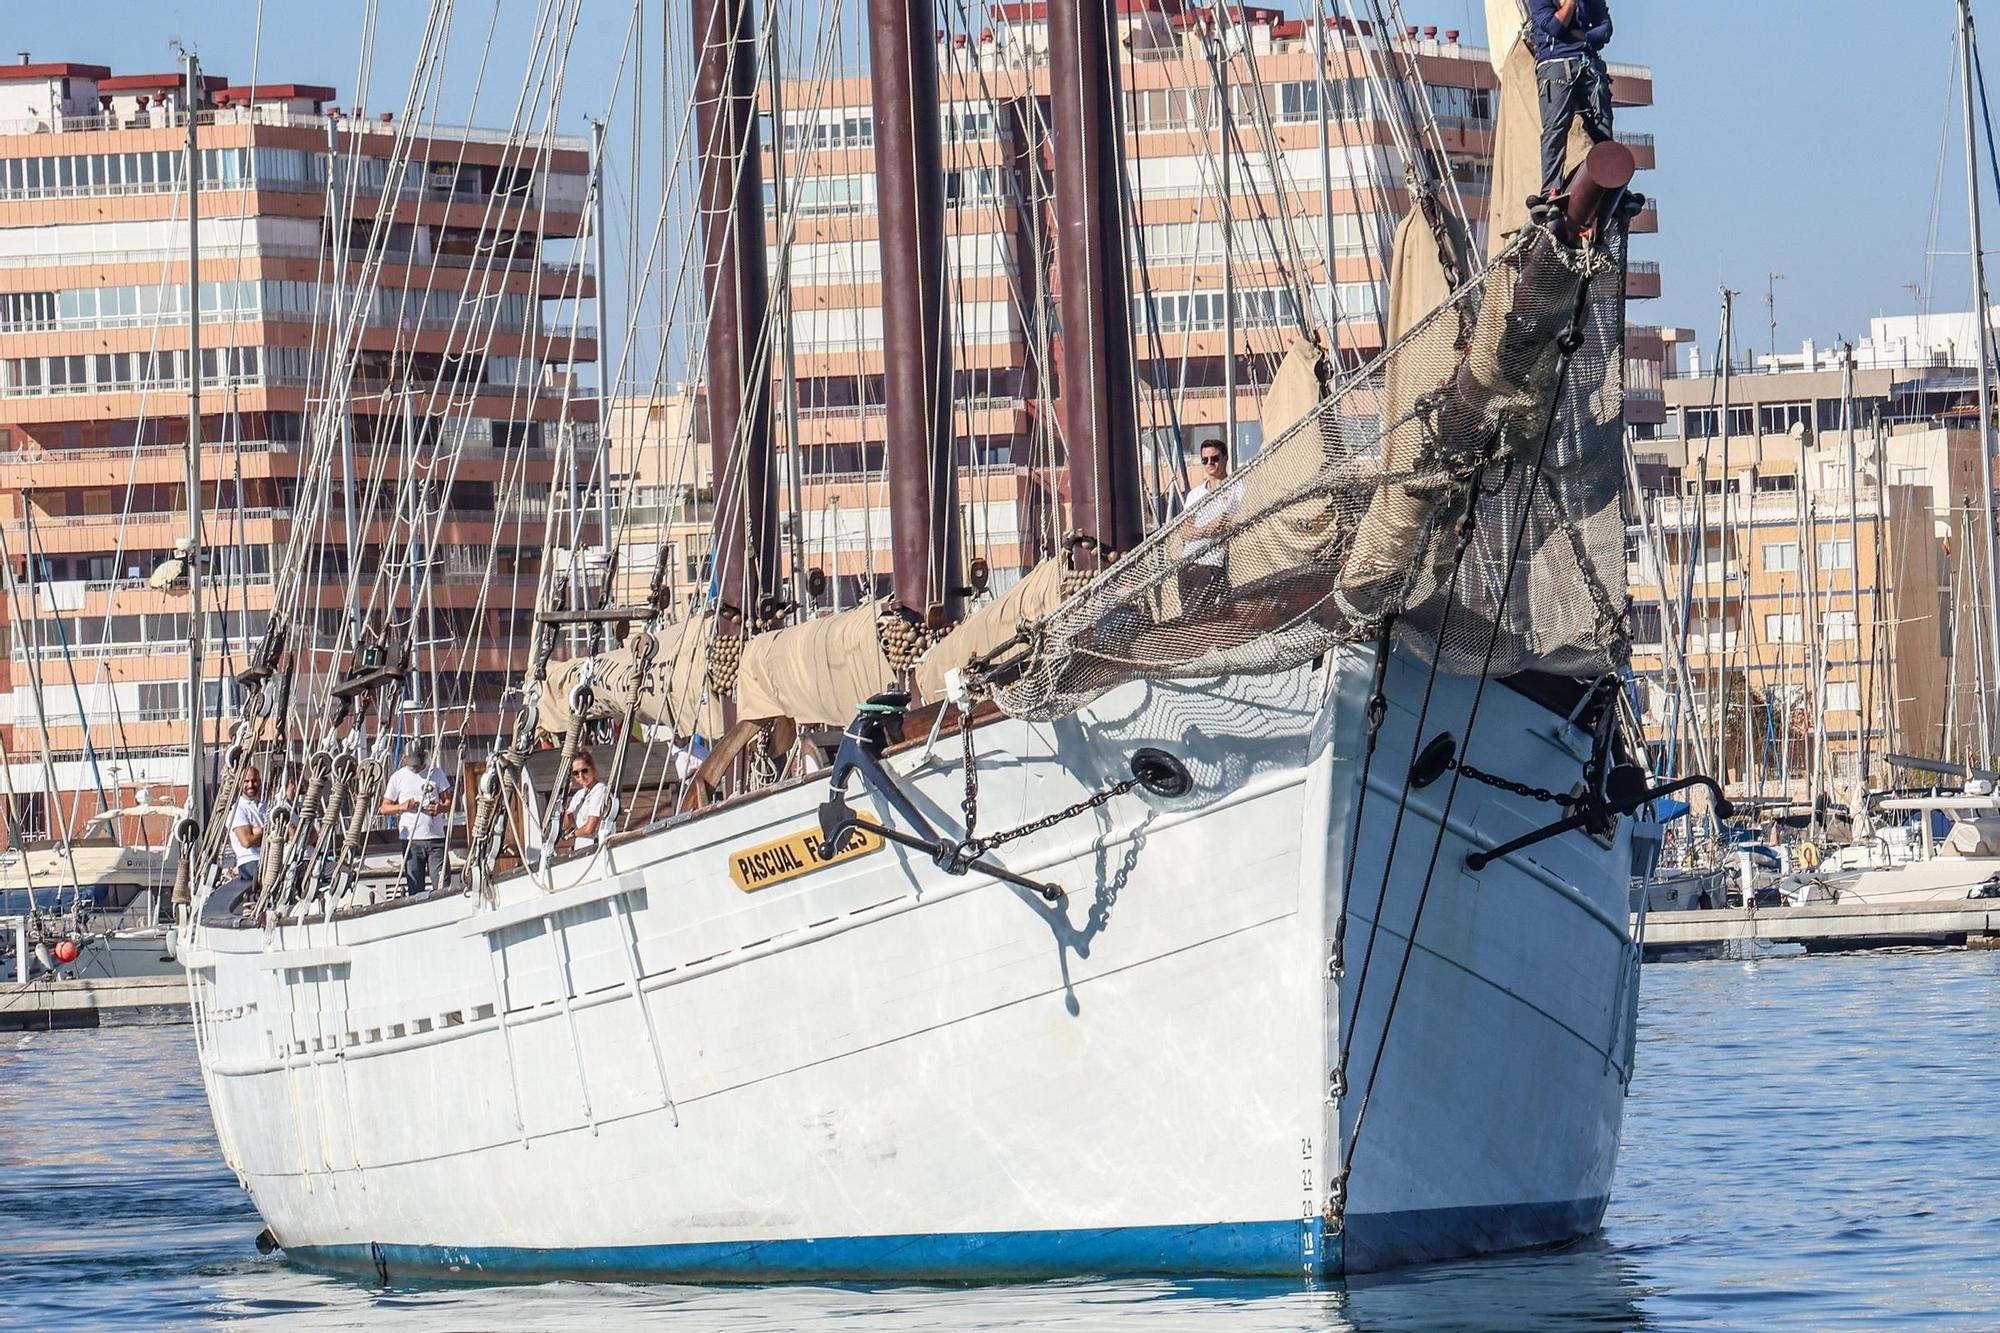 El velero histórico Pascual Flores ya está en la bahía de Torrevieja